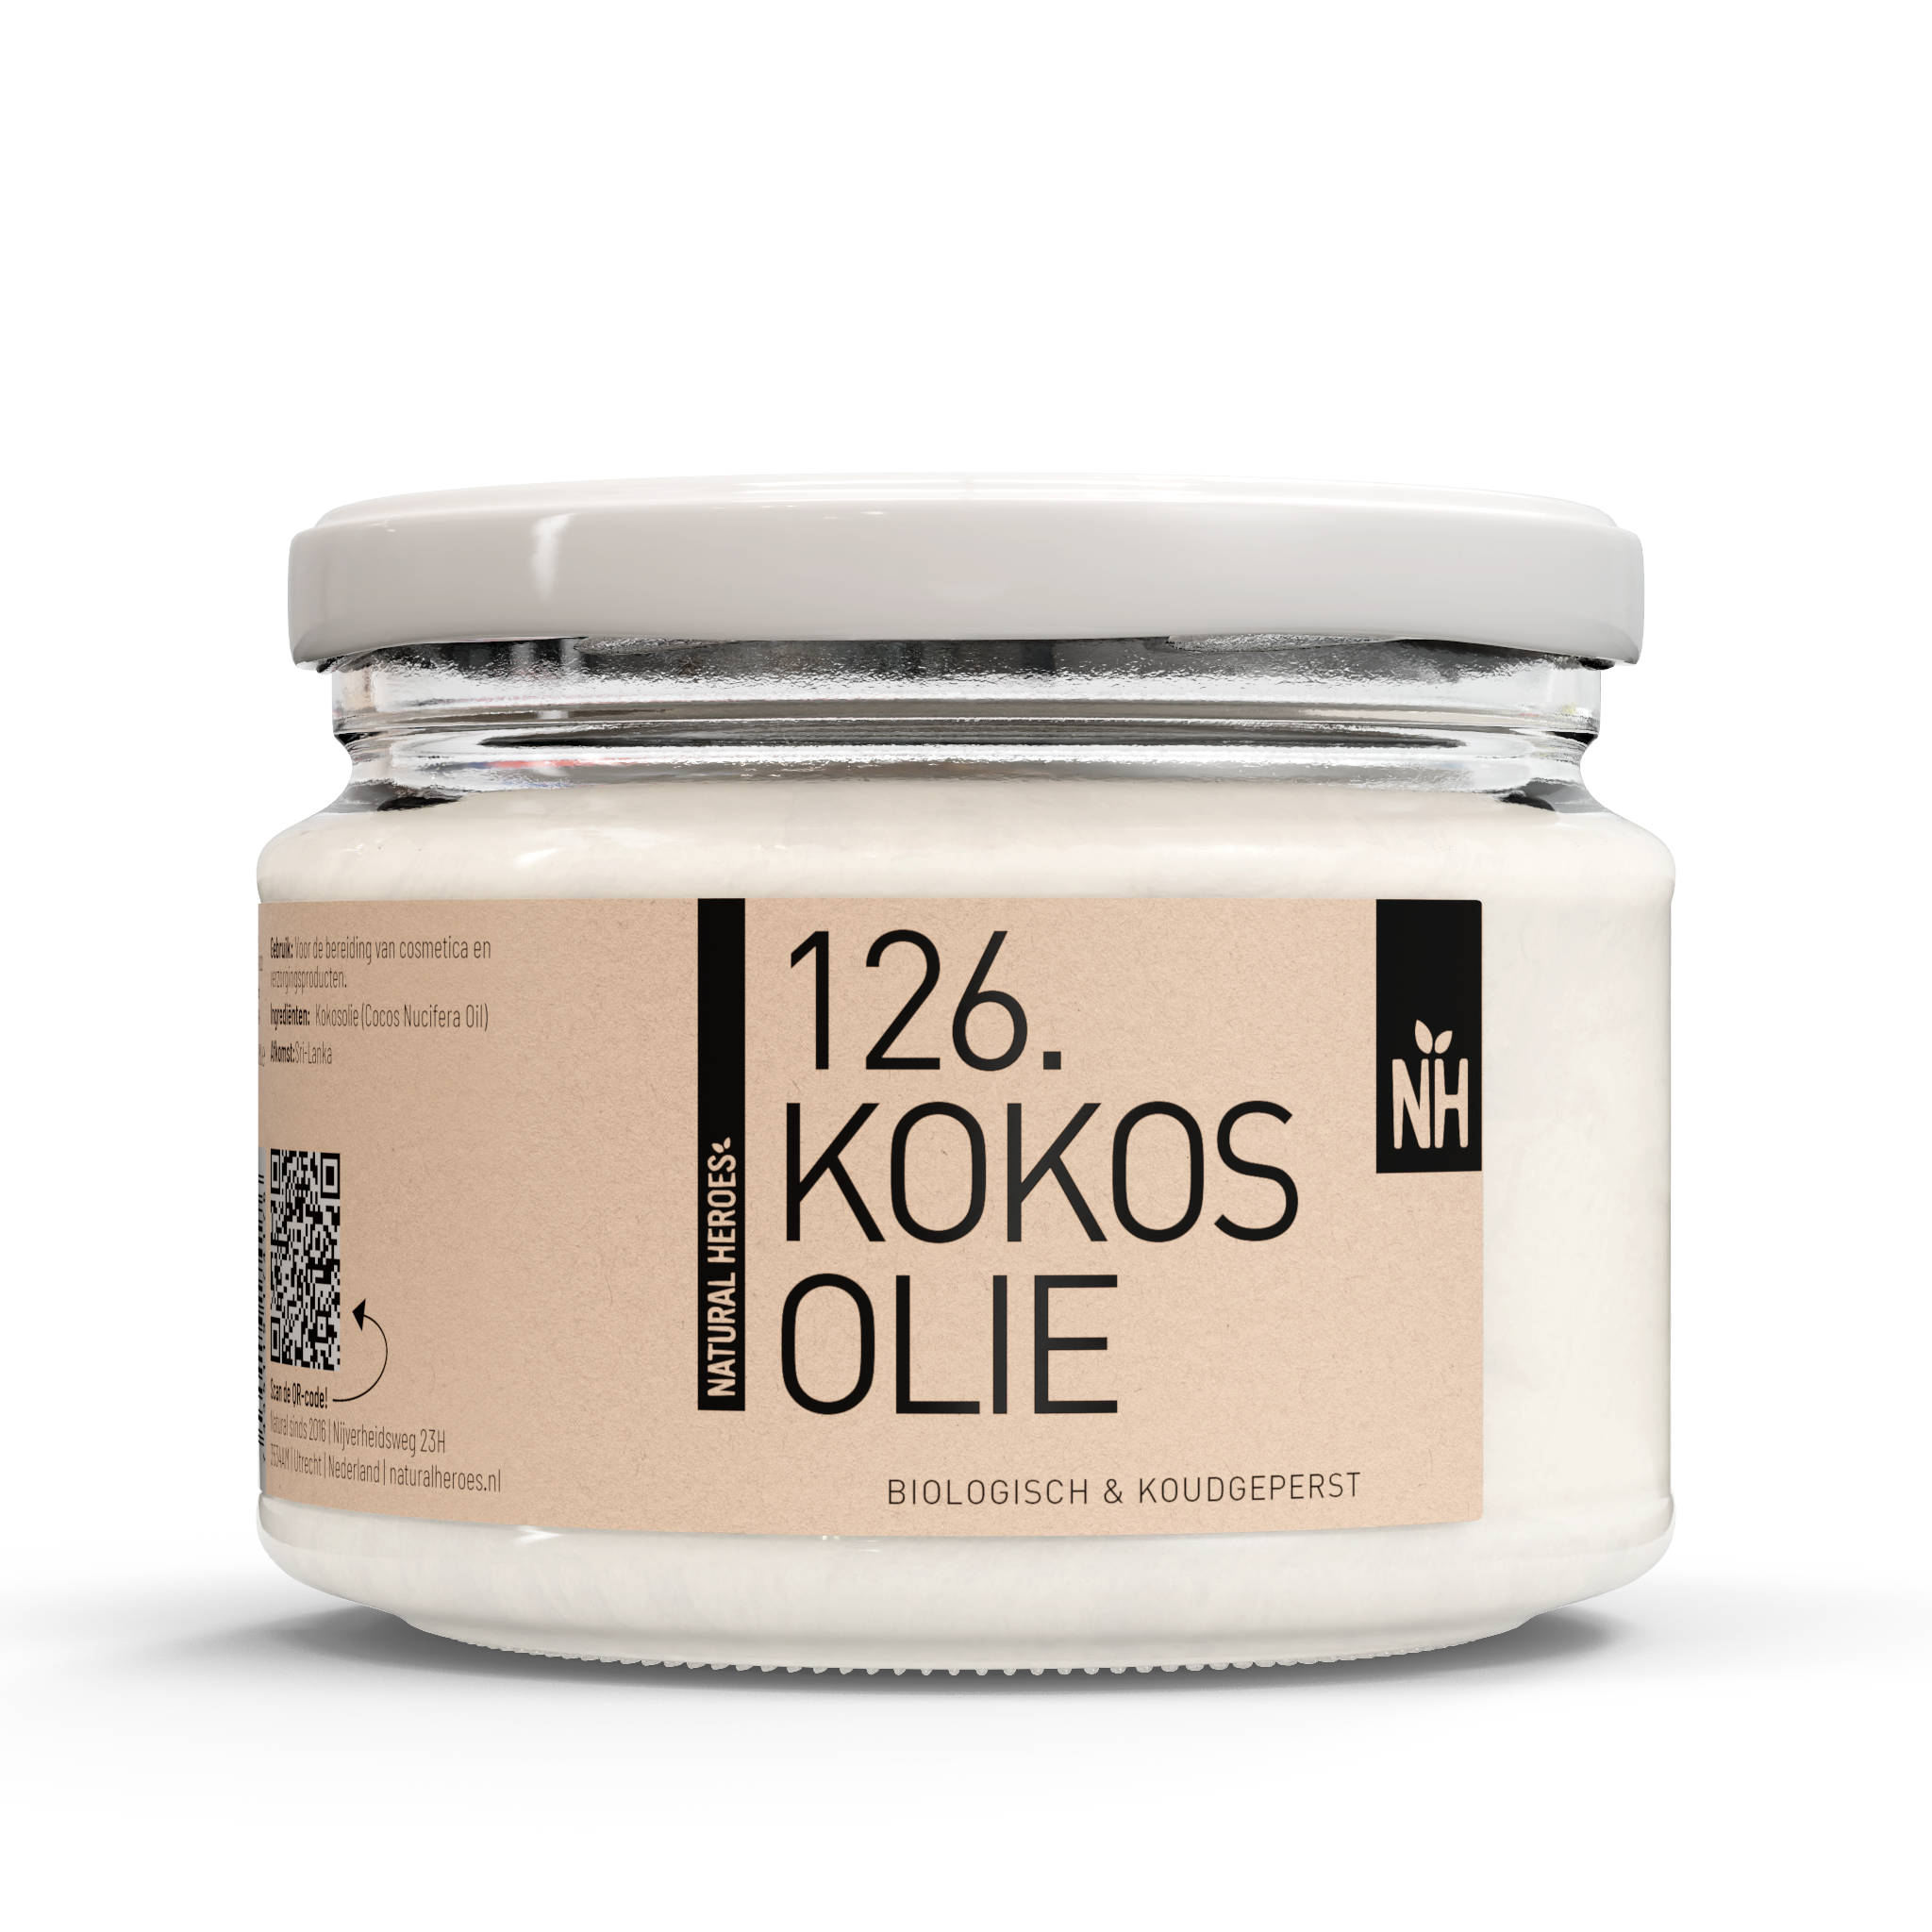 Natural Heroes Kokosolie (Biologisch & Koudgeperst) 250 ml